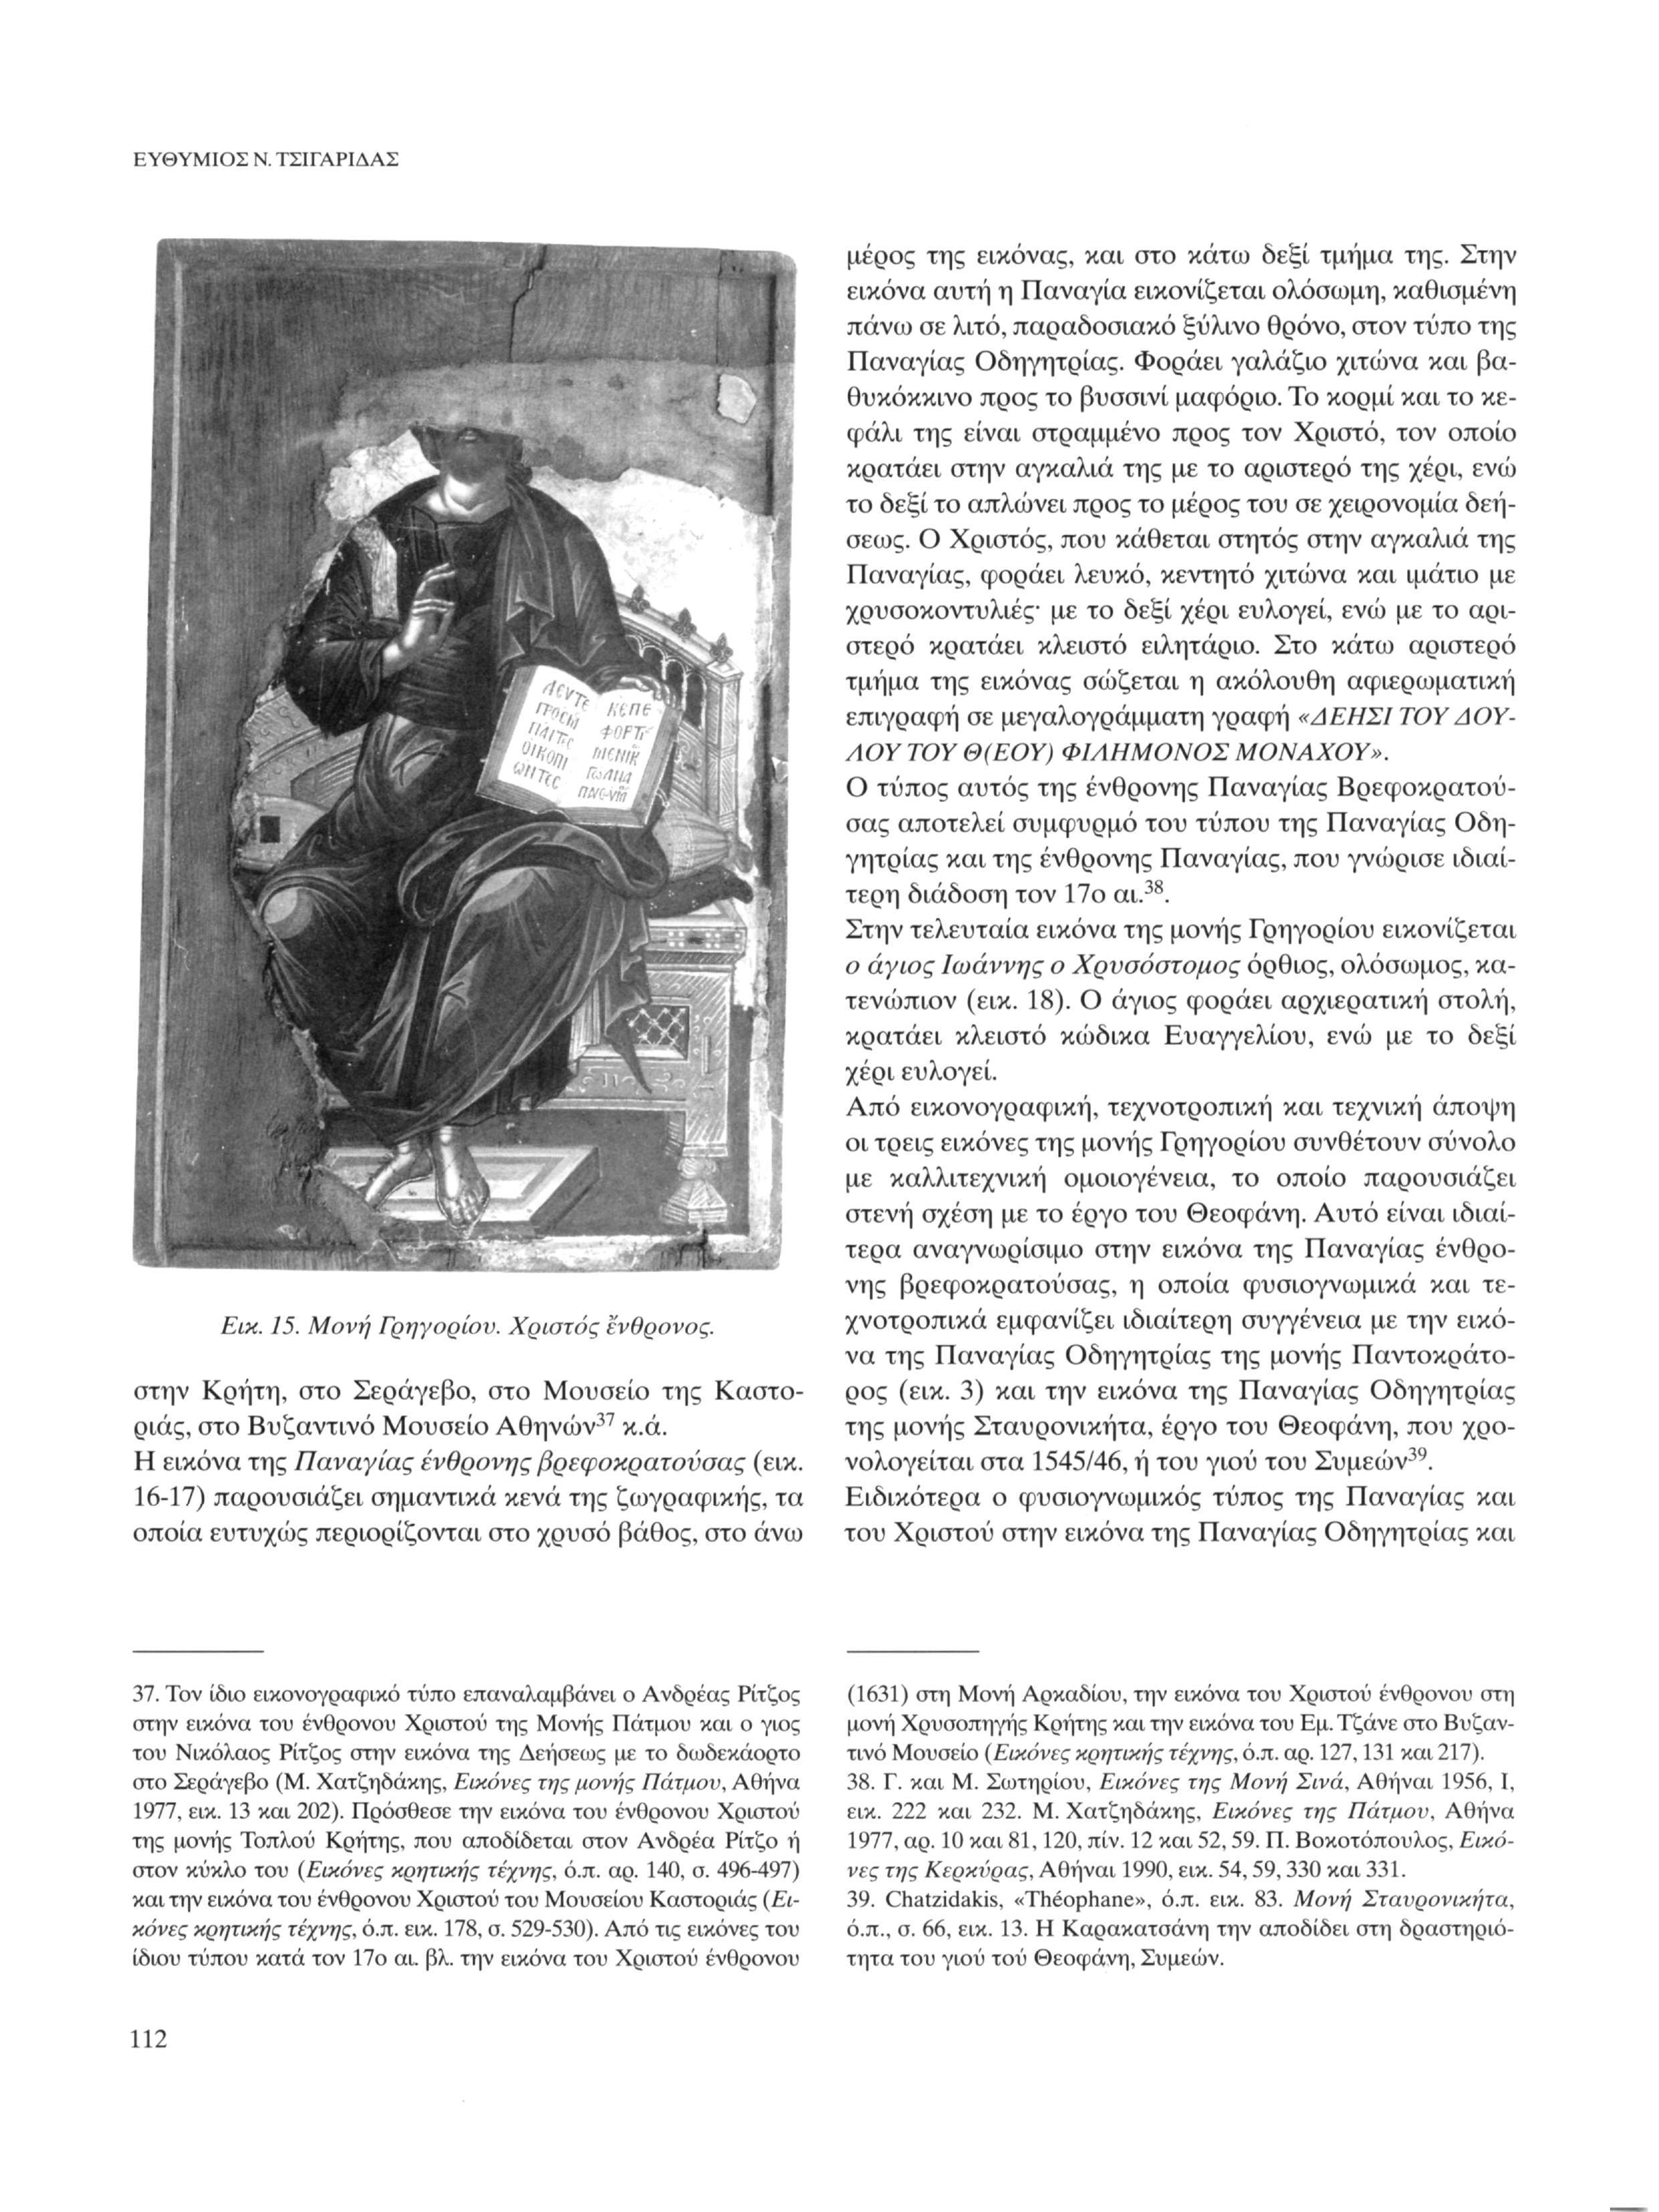 ΕΥΘΥΜΙΟΣ Ν. ΤΣΙΓΑΡΙΔΑΣ Εικ. 15. Μονή Γρηγορίον. Χριστός ενθρονος. στην Κρήτη, στο Σεράγεβο, στο Μουσείο της Καστοριάς, στο Βυζαντινό Μουσείο Αθηνών 37 κ.ά. Η εικόνα της Παναγίας ένθρονης βρεφοκρατονσας (εικ.